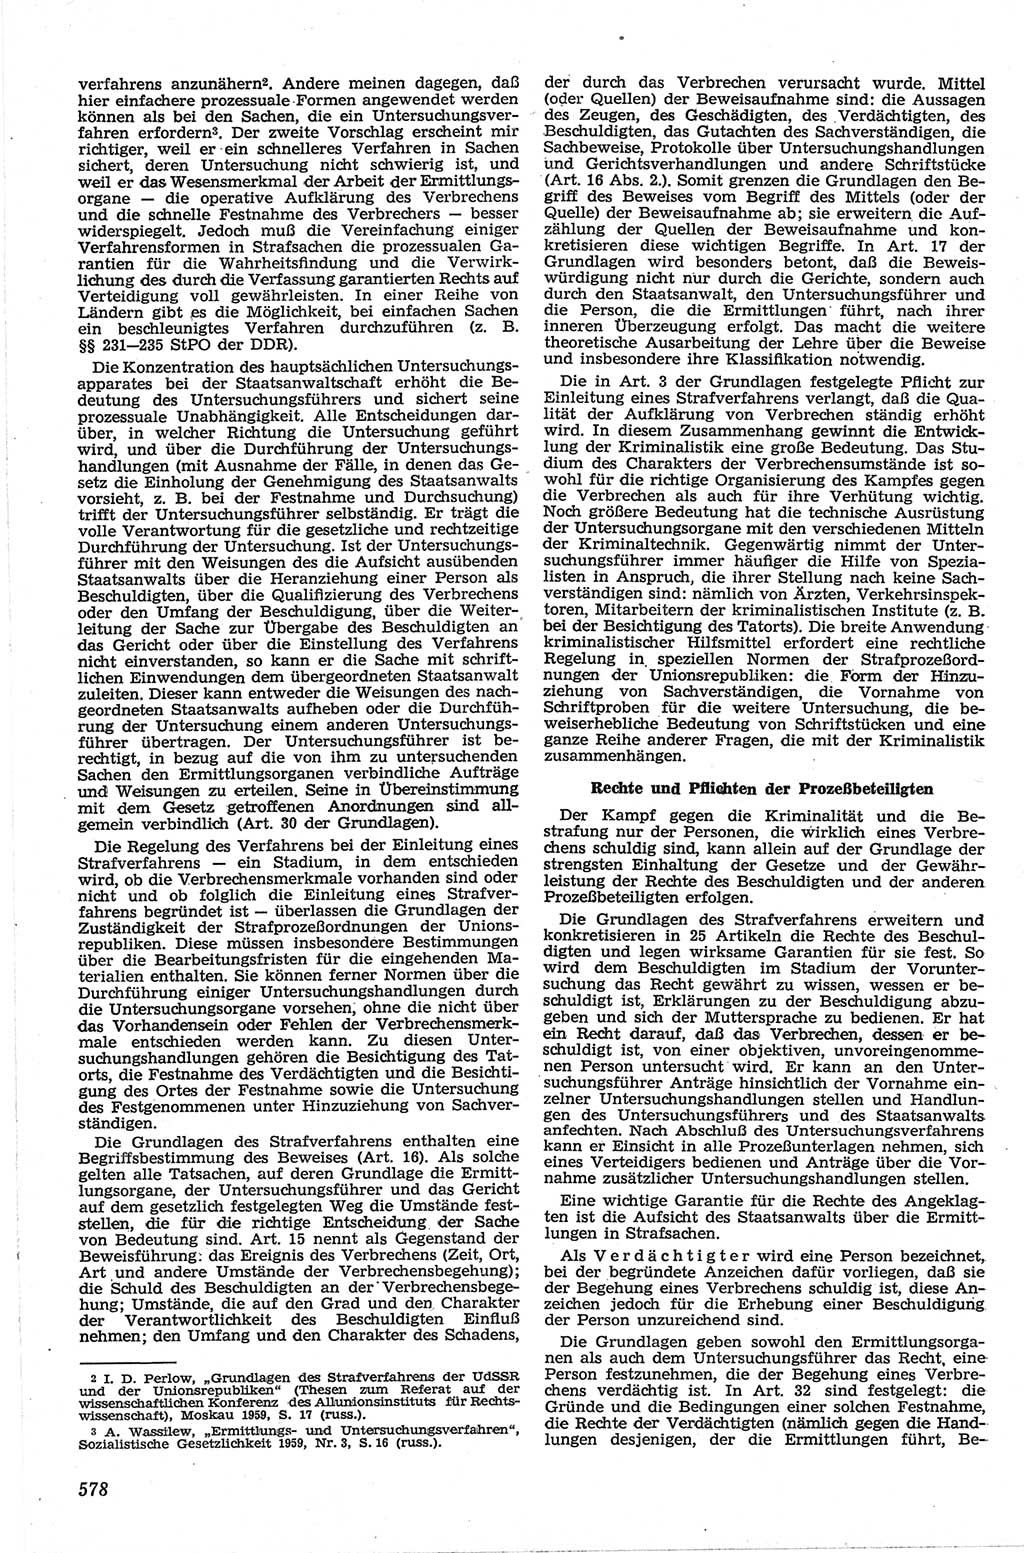 Neue Justiz (NJ), Zeitschrift für Recht und Rechtswissenschaft [Deutsche Demokratische Republik (DDR)], 13. Jahrgang 1959, Seite 578 (NJ DDR 1959, S. 578)